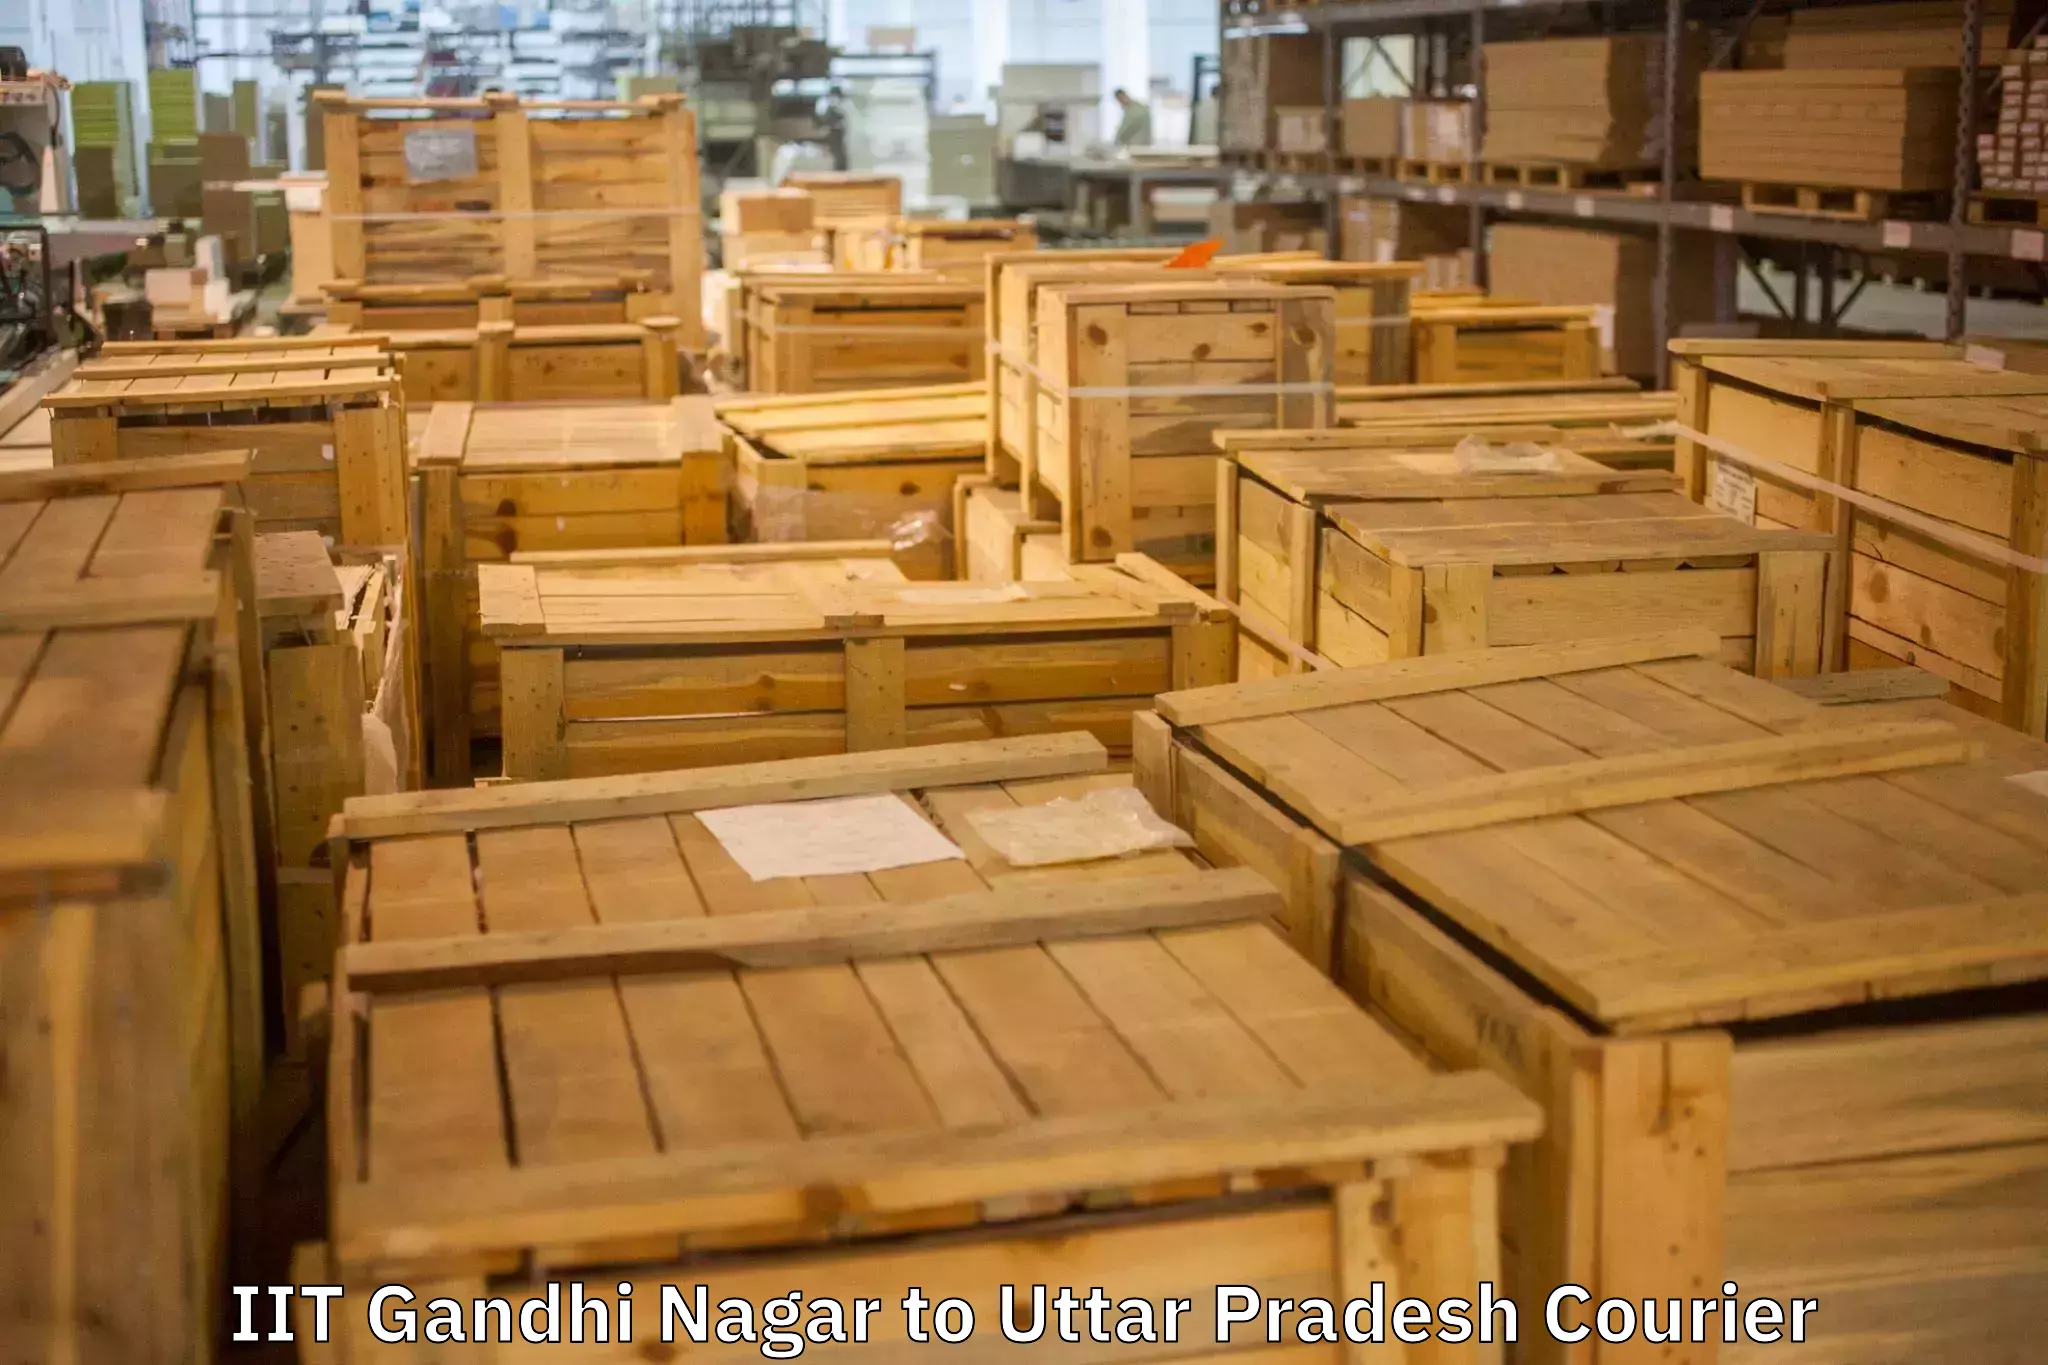 Professional moving company IIT Gandhi Nagar to Lalitpur